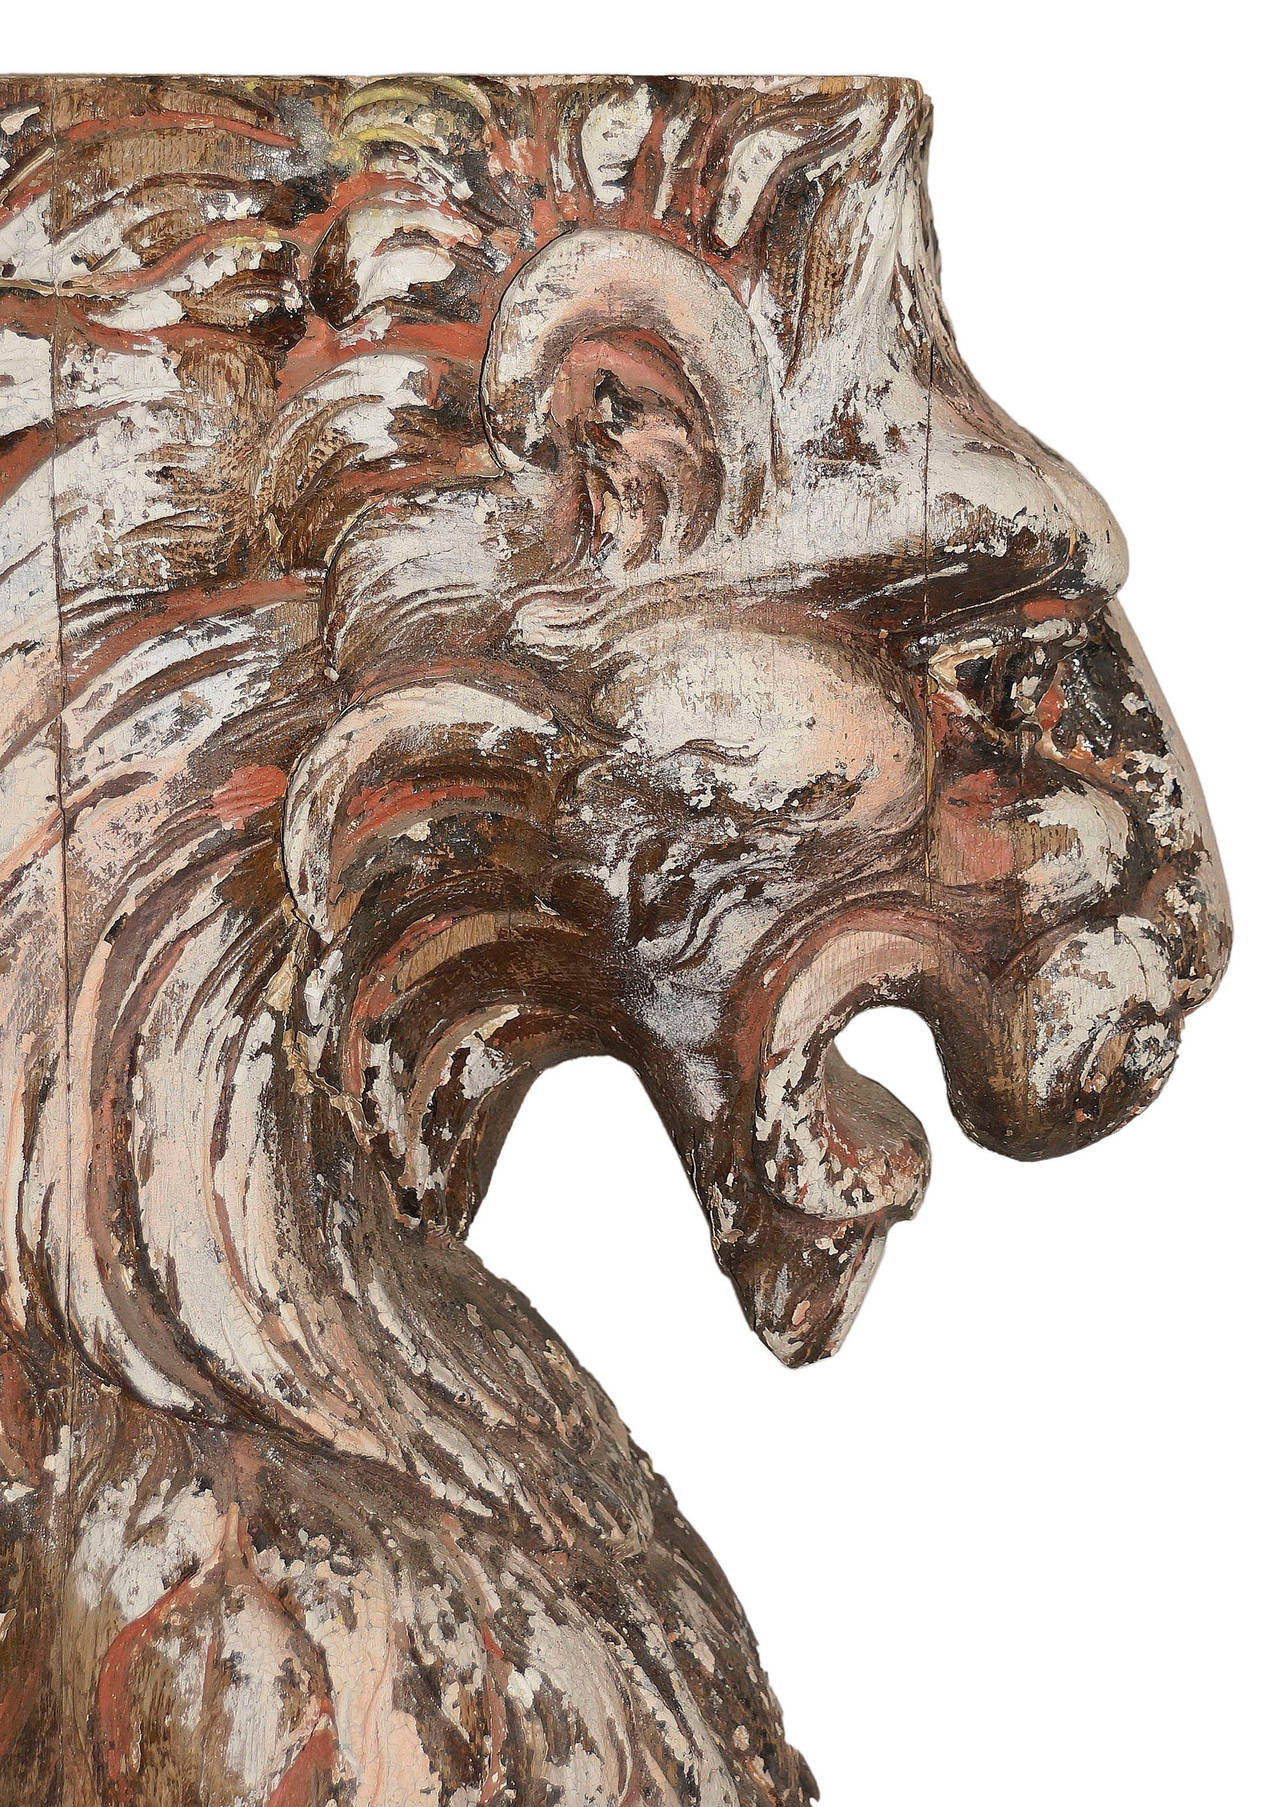 Beaux Arts Statuesque Beaux-Arts Era Carved Wood Lion Ornament For Sale